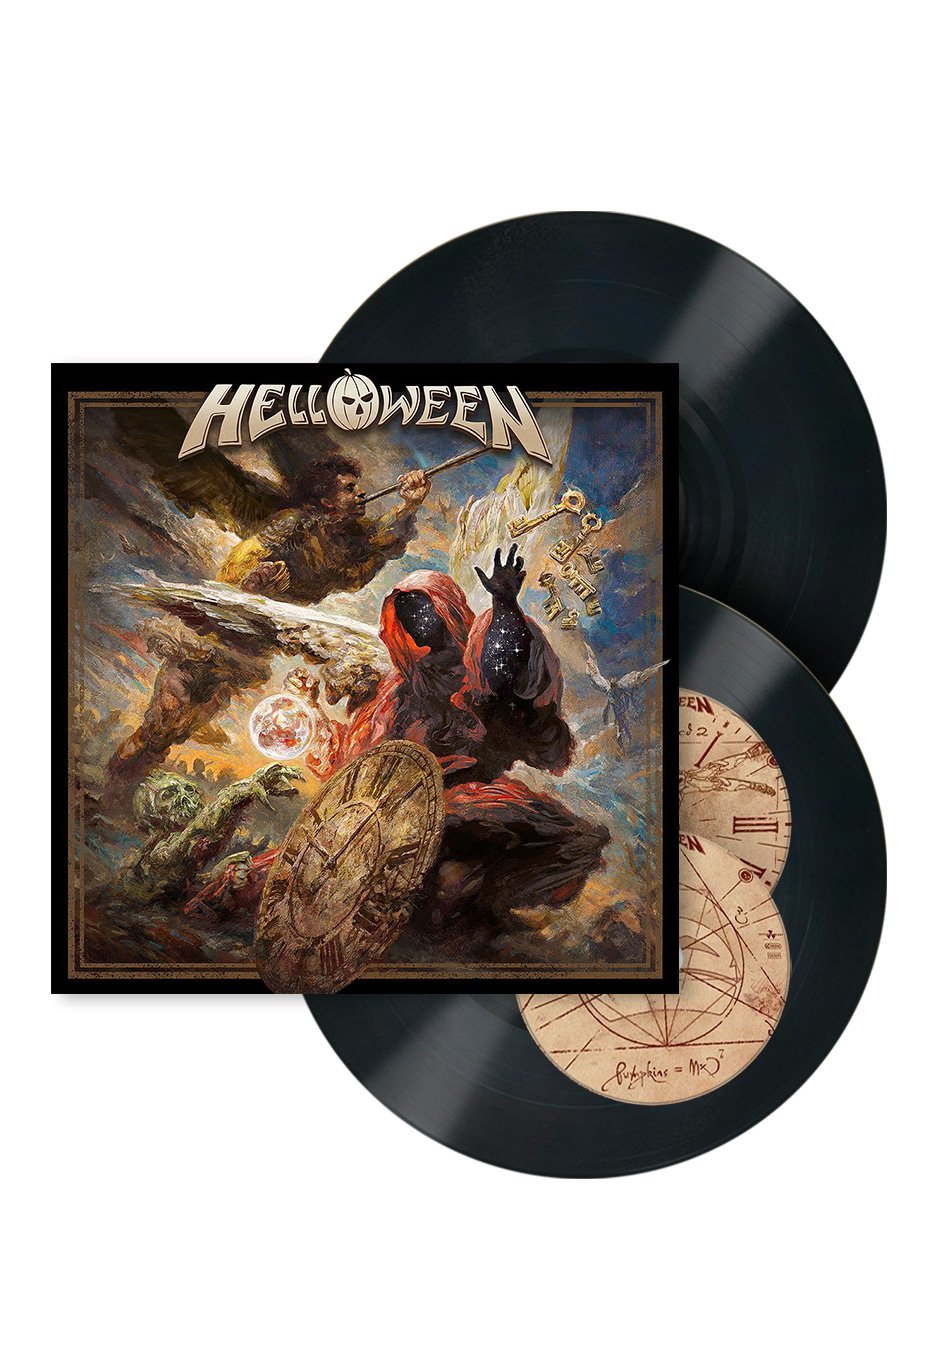 Helloween - Helloween - Earbook 2 Vinyl + 2 CD